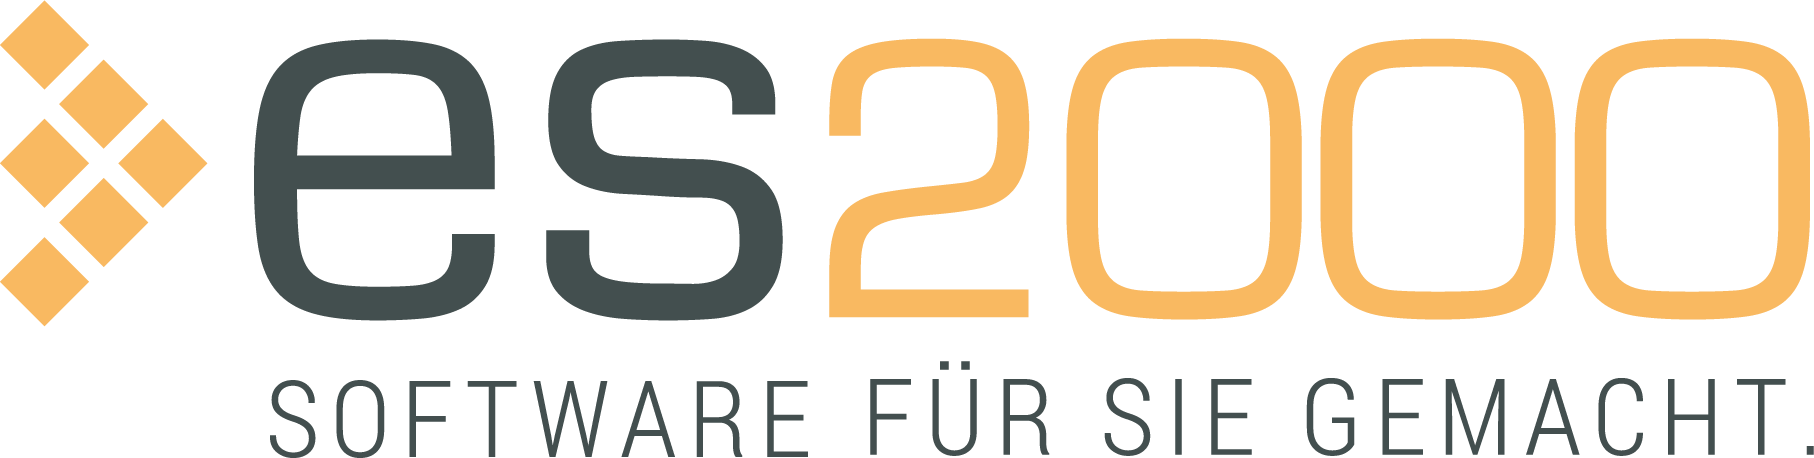 Basic_Eintrag_es2000_Logo